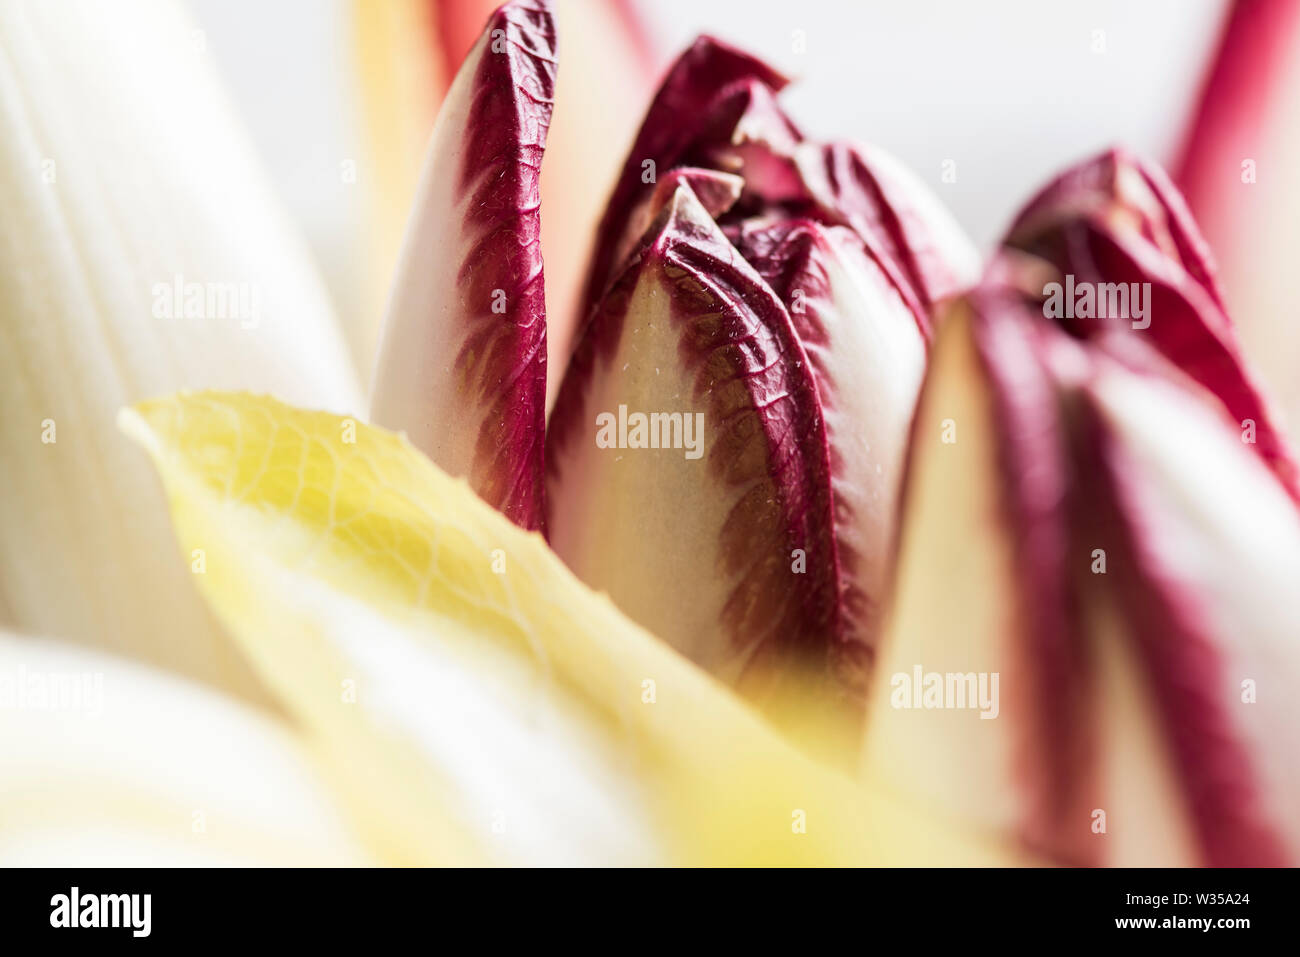 Chefs de jaune et violet/chicorée endive shot close up Banque D'Images